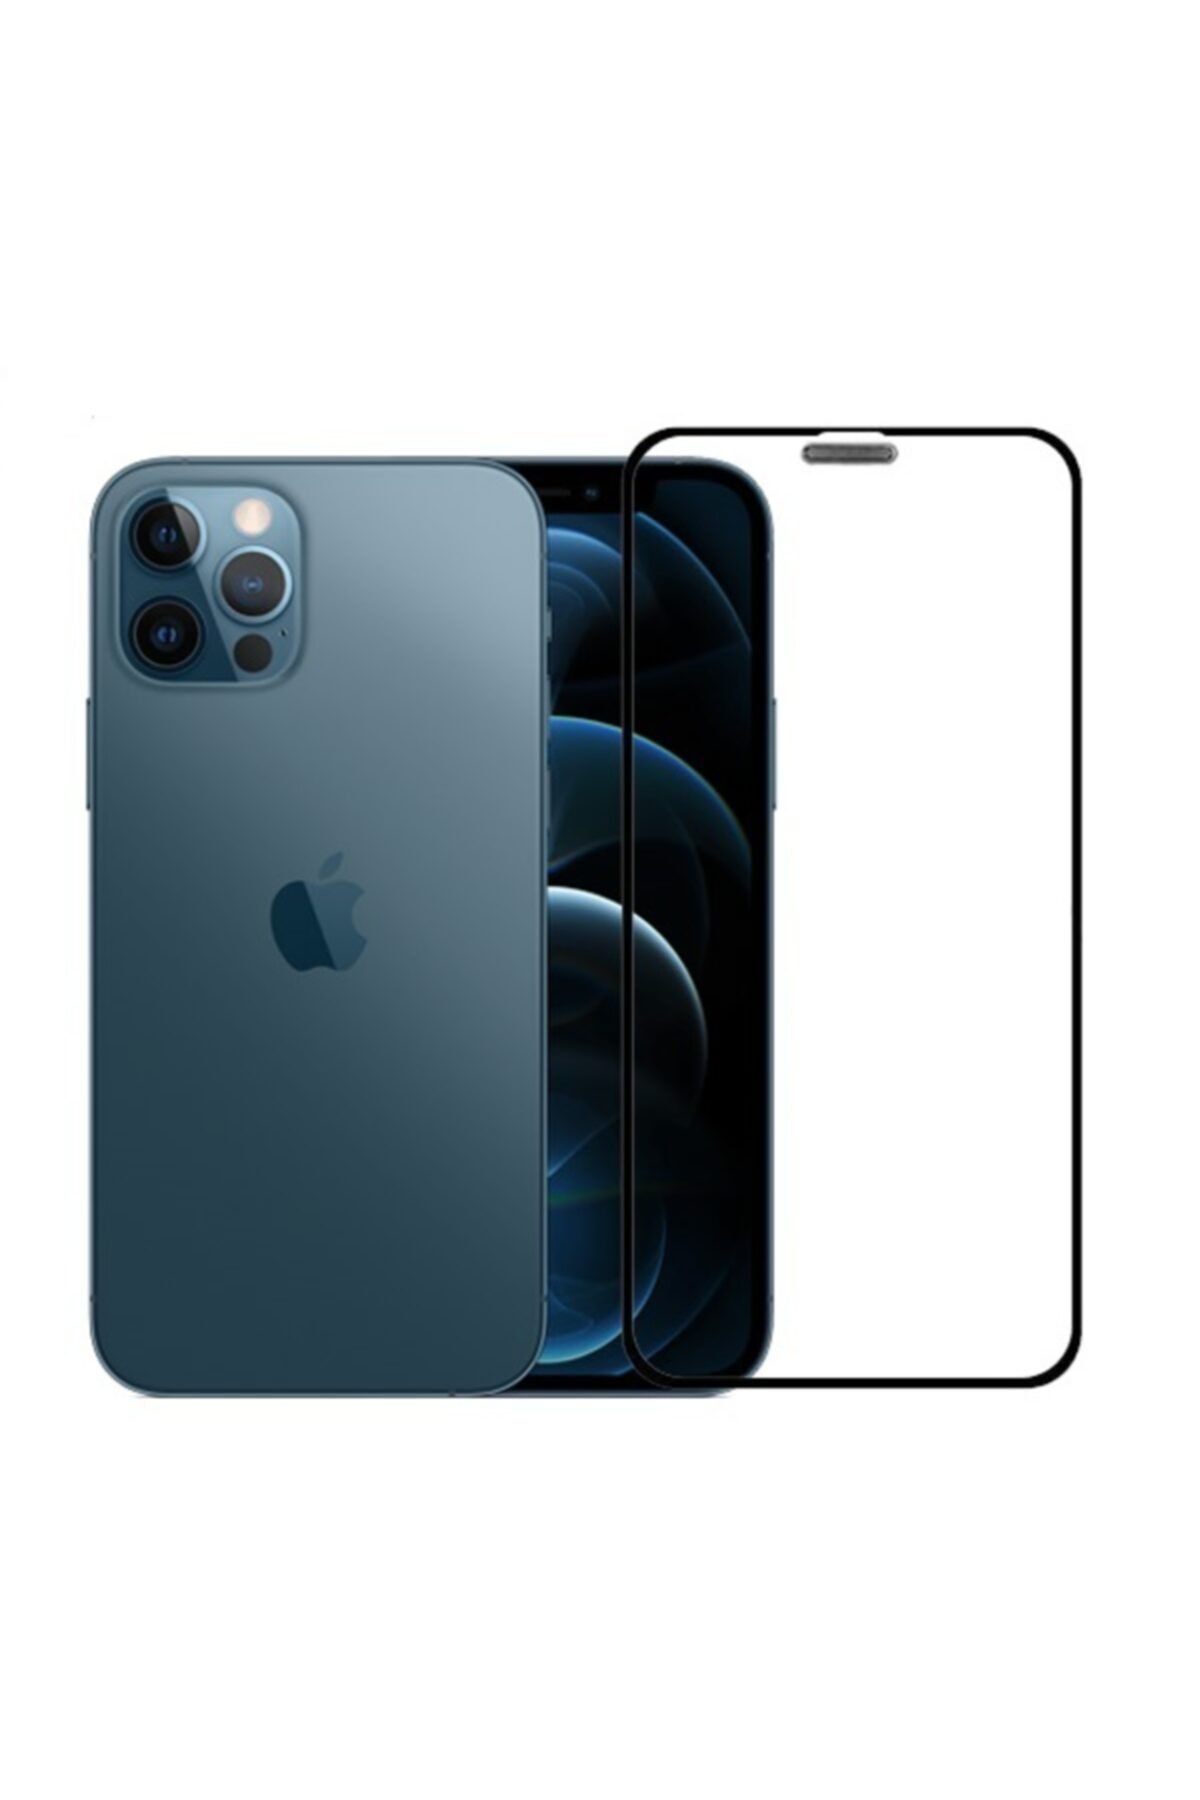 Go Aksesuar Apple Iphone 12 6,1 Tam Kaplayan Esnek Nano Ekran Koruyucu Cam